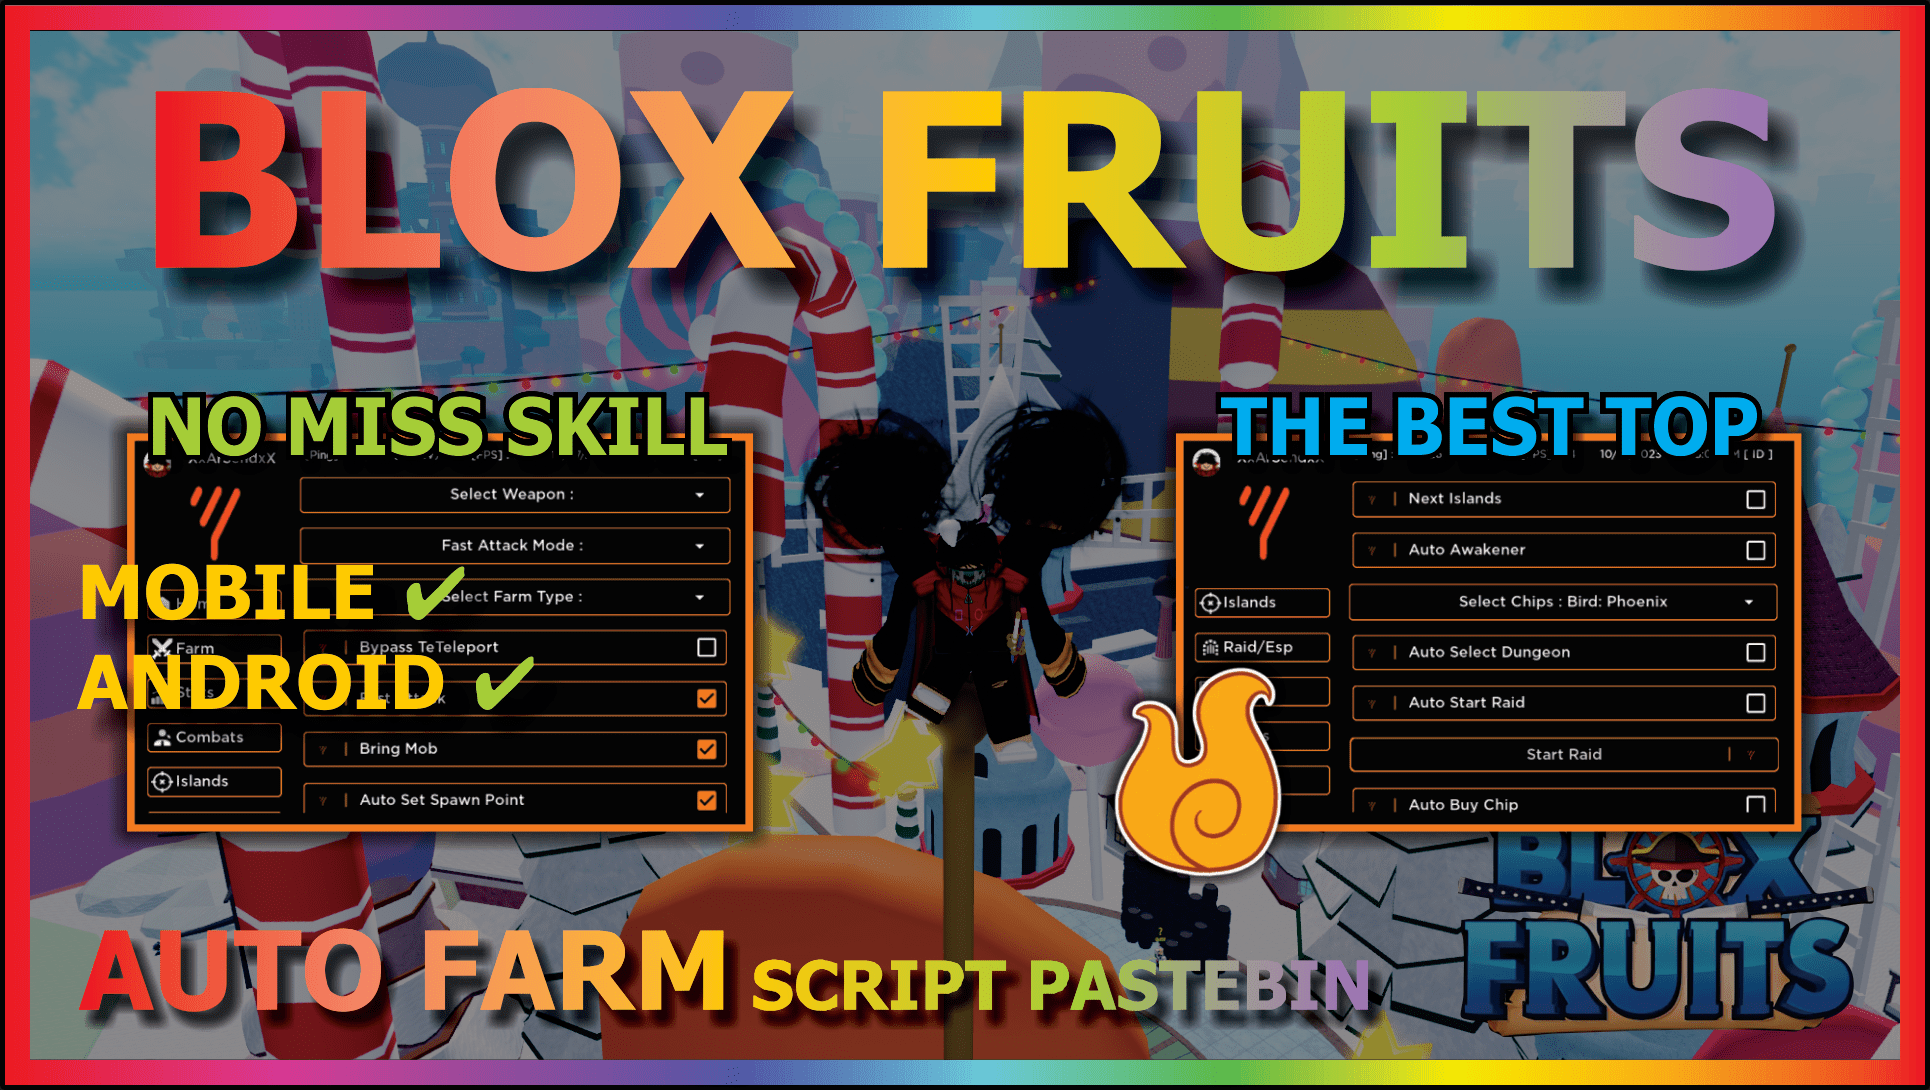 TNG Hub V4 Blox Fruits Script - Arceus X